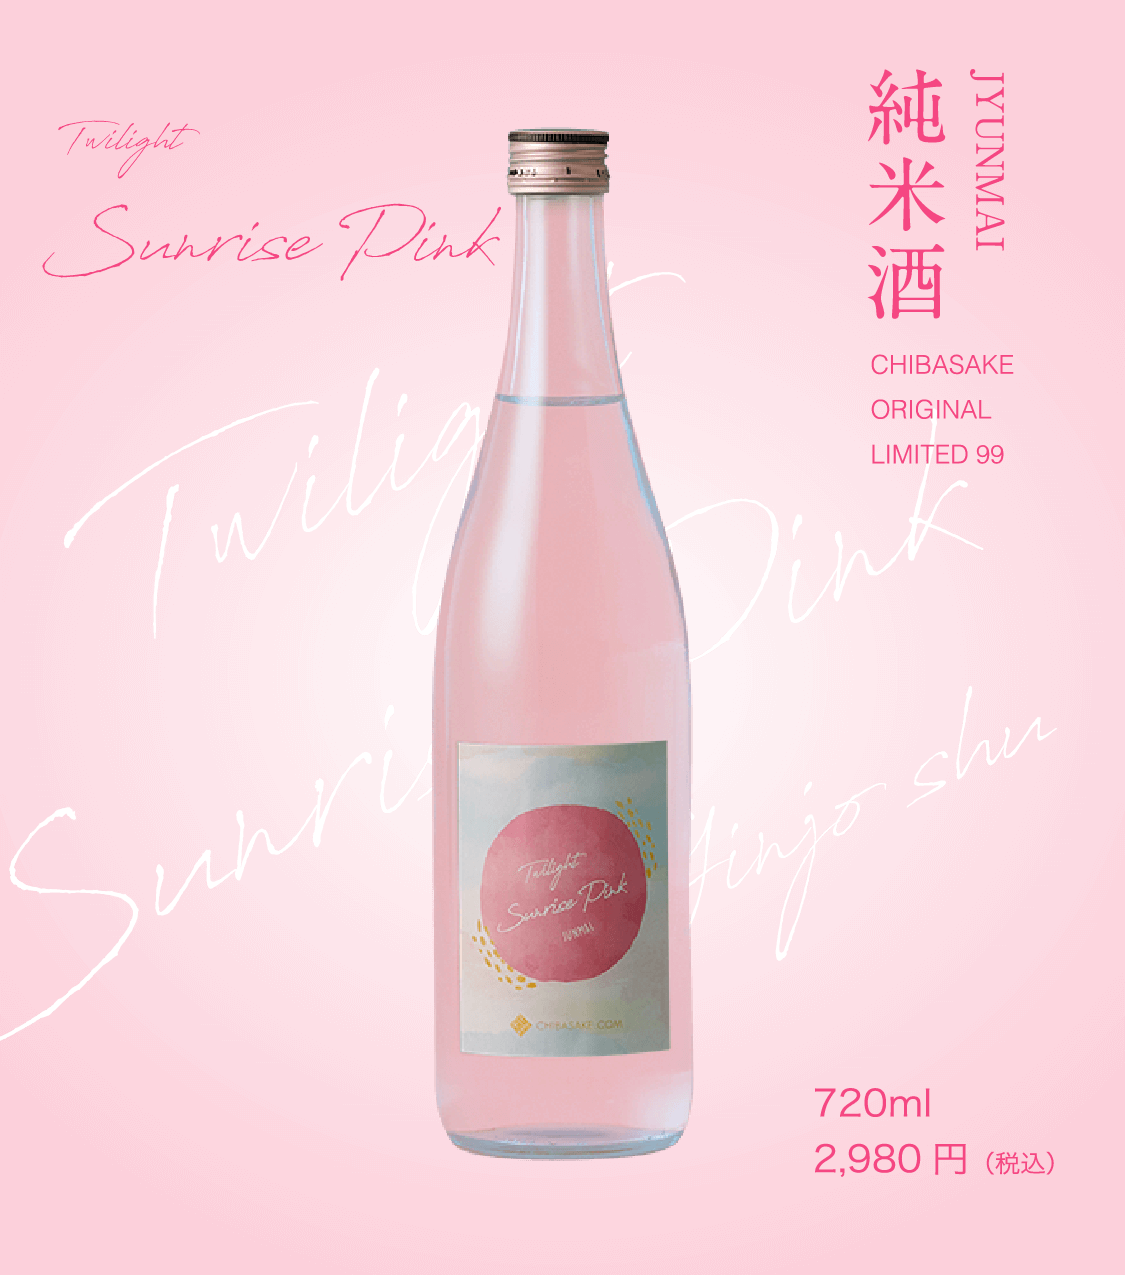 Sunrisepink 純米酒 720ml
2,980 円（税込）